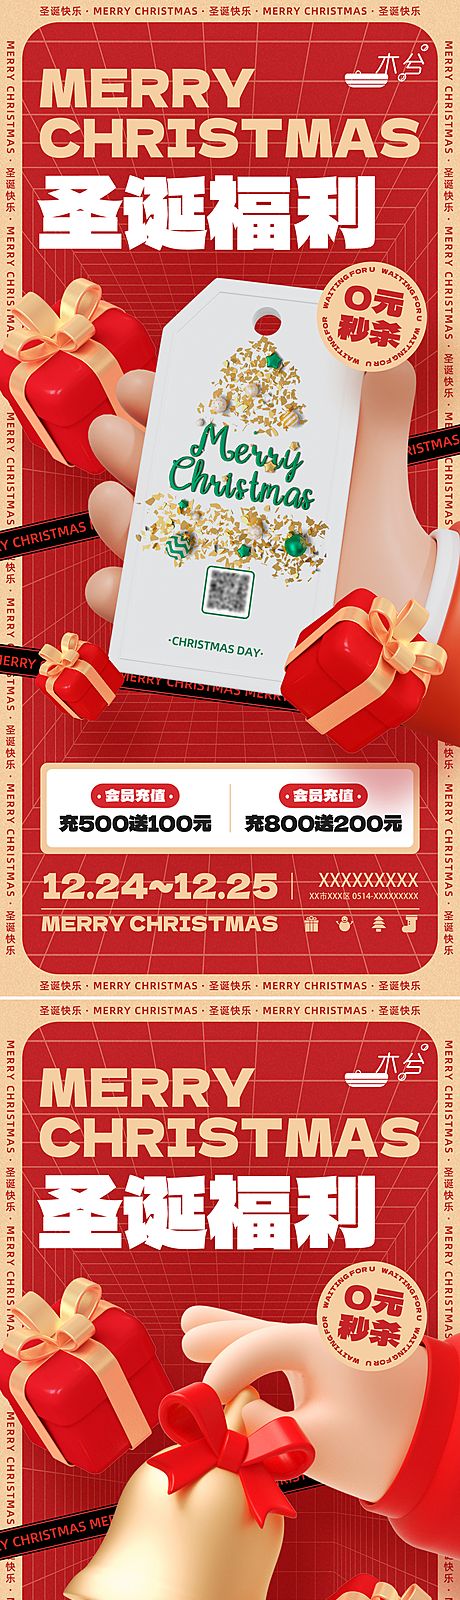 仙图网-圣诞节直播促销系列海报